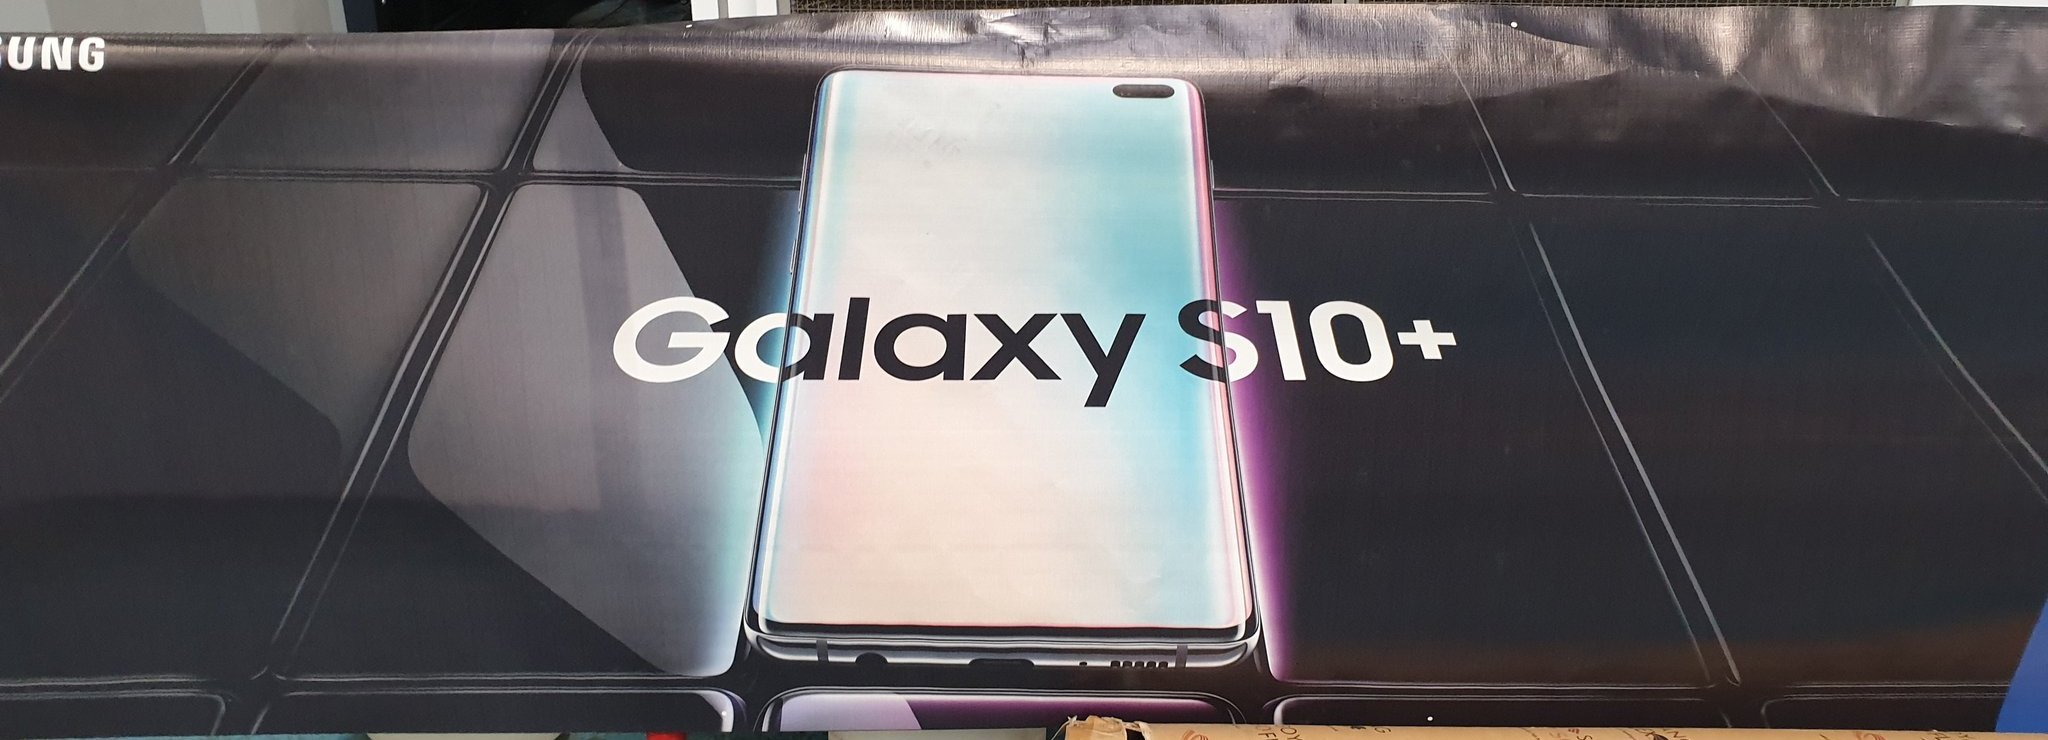 Samsung Galaxy S10 Plus resmi afişi ile karşınızda! SDN-2